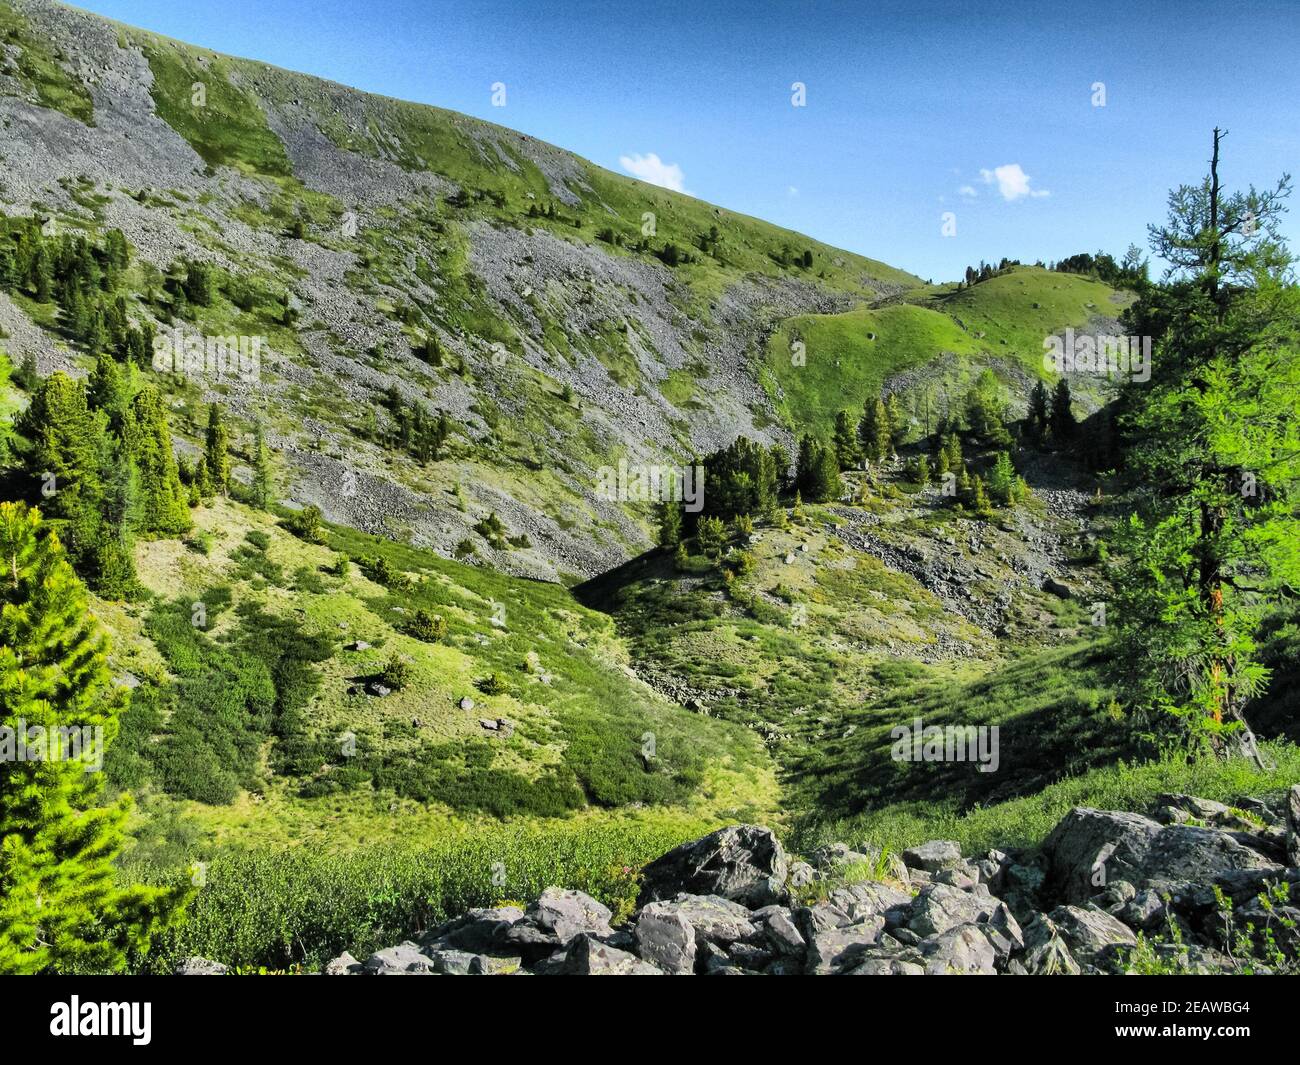 Die Natur ist altai. Berglandschaft, Wälder und Stauseen von altai. Stockfoto